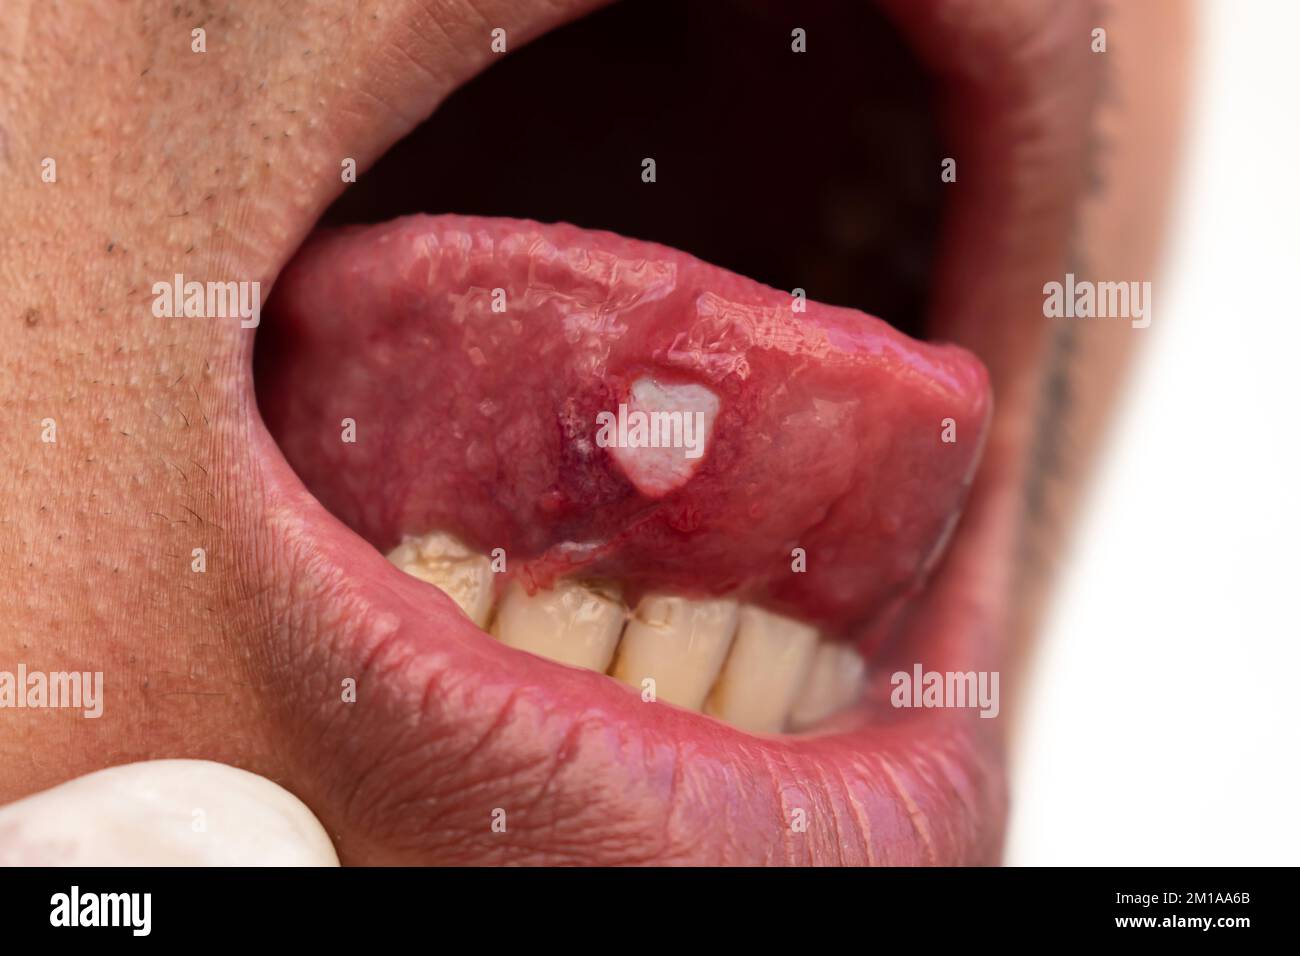 Ulcera alla lingua di un paziente asiatico di sesso maschile. La diagnosi può essere un'ulcera aftosa, un dolore al canker, un'ulcera da stress o un cancro alla lingua. Foto Stock